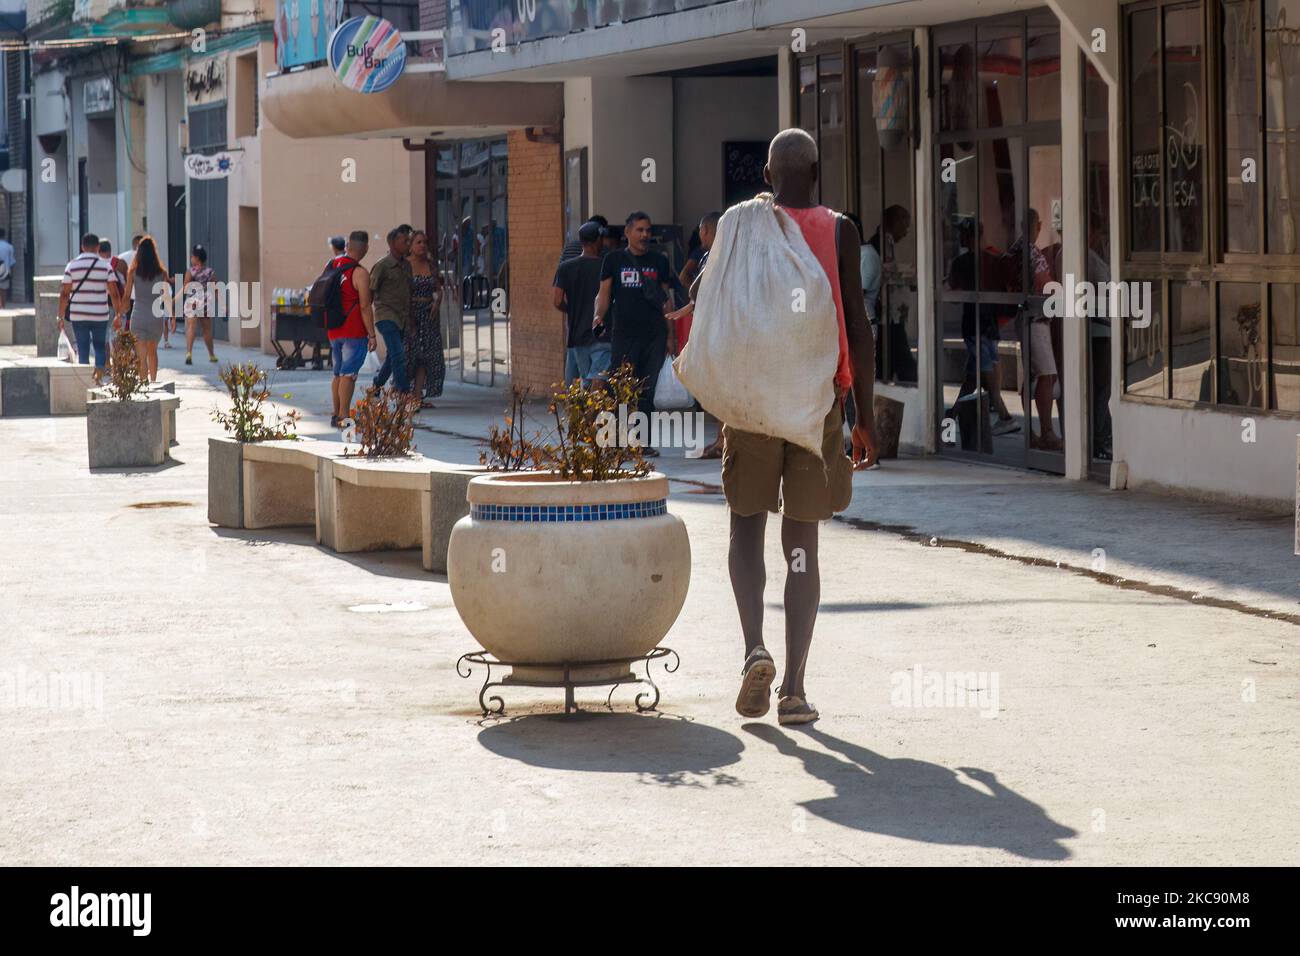 Un pobre y sucio hombre cubano en pantalones cortos lleva un saco mientras camina por un bulevar de la ciudad o una pasarela. Foto de stock